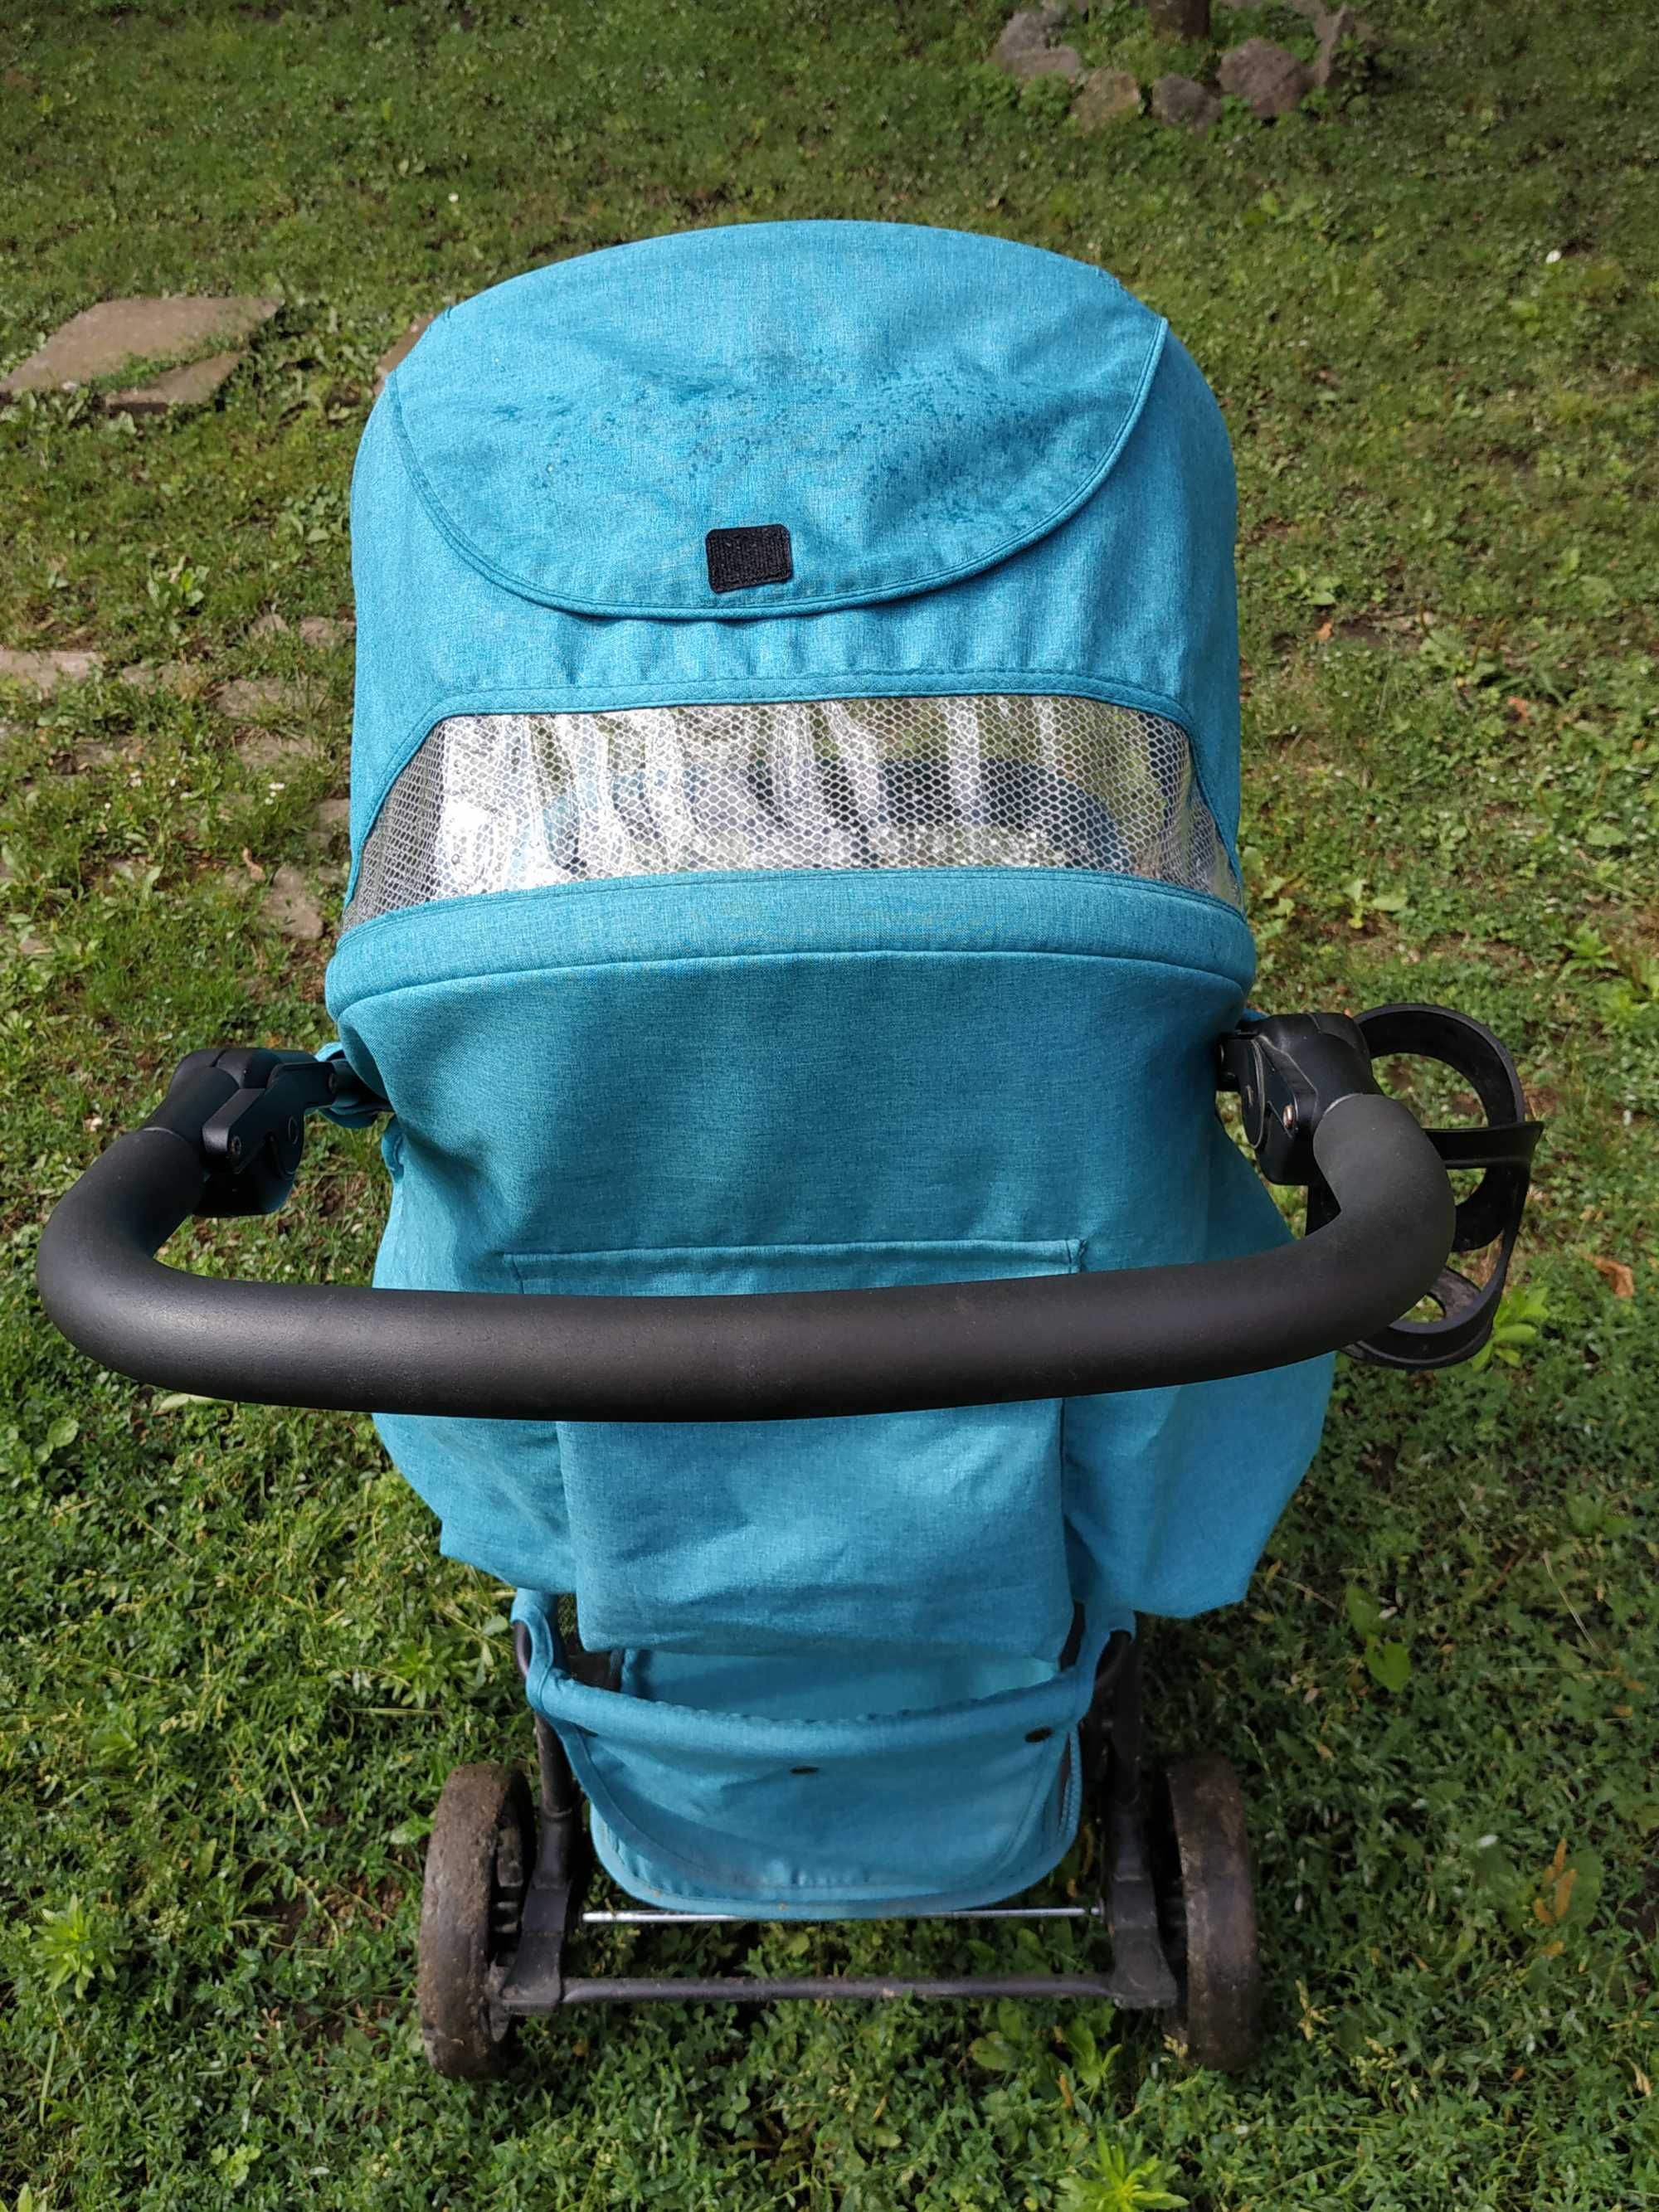 Детская коляска фирмы carrello